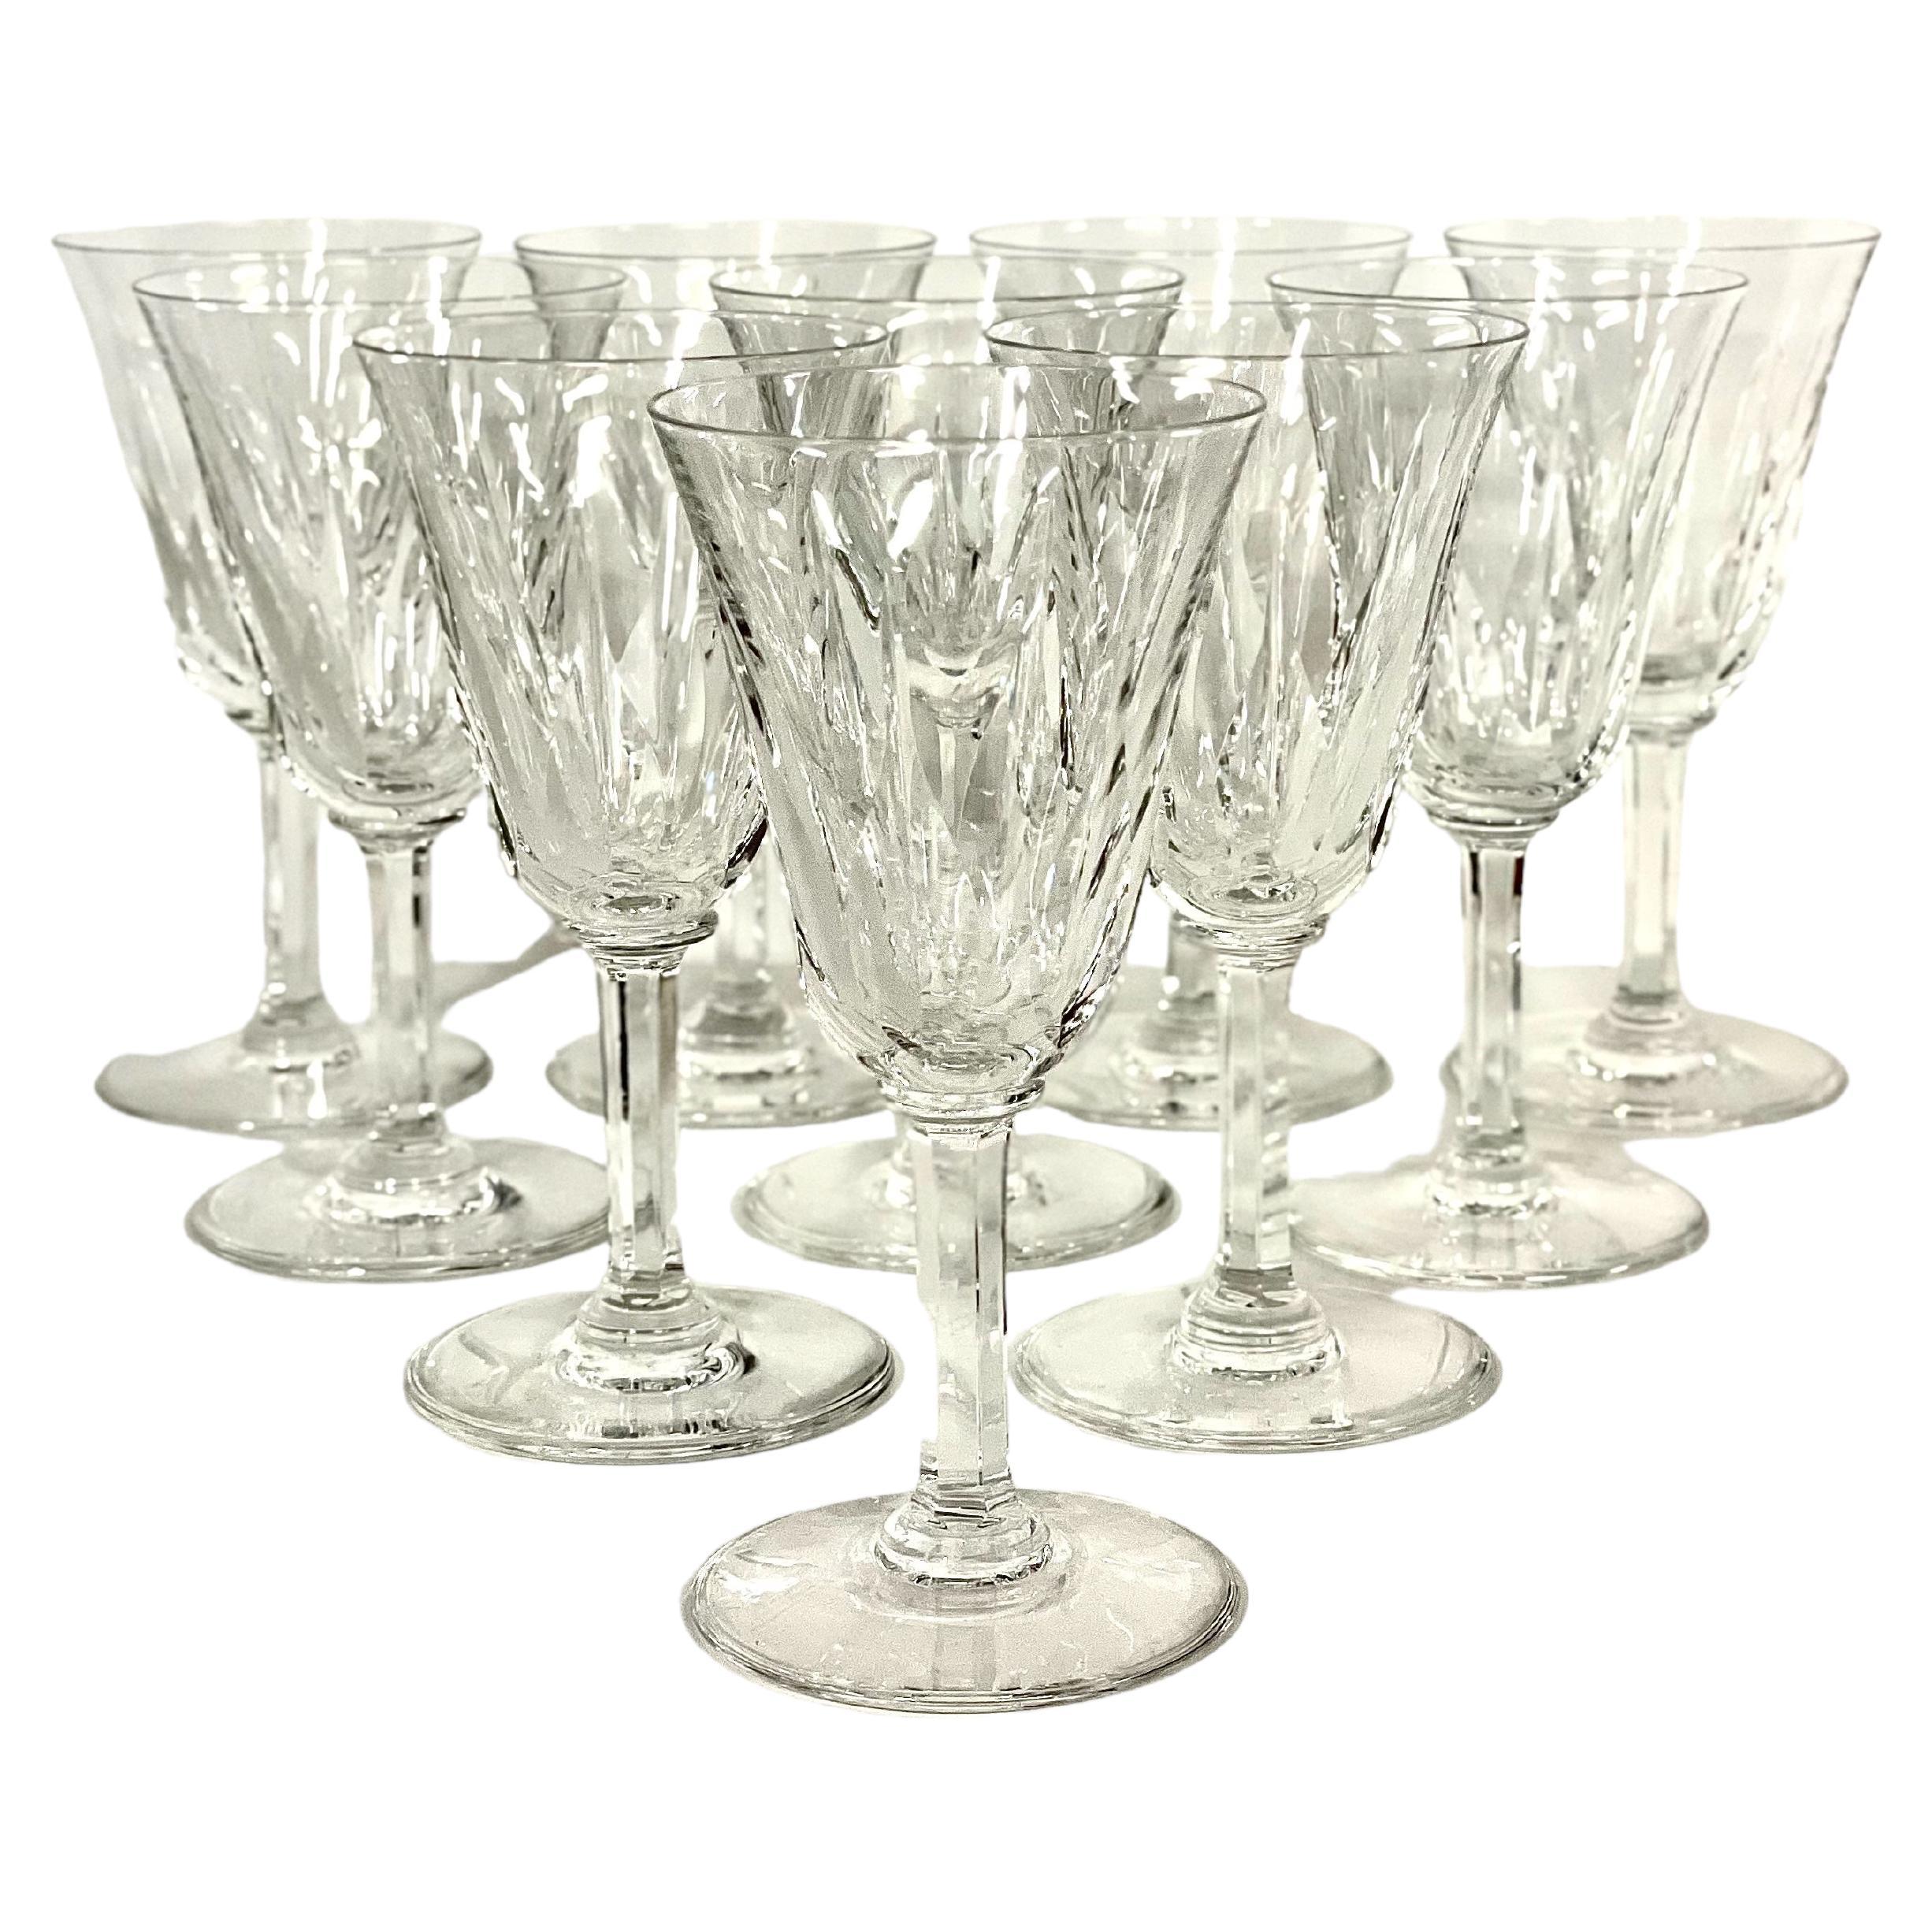 Set of 10 Saint Louis Crystal Wine Glasses